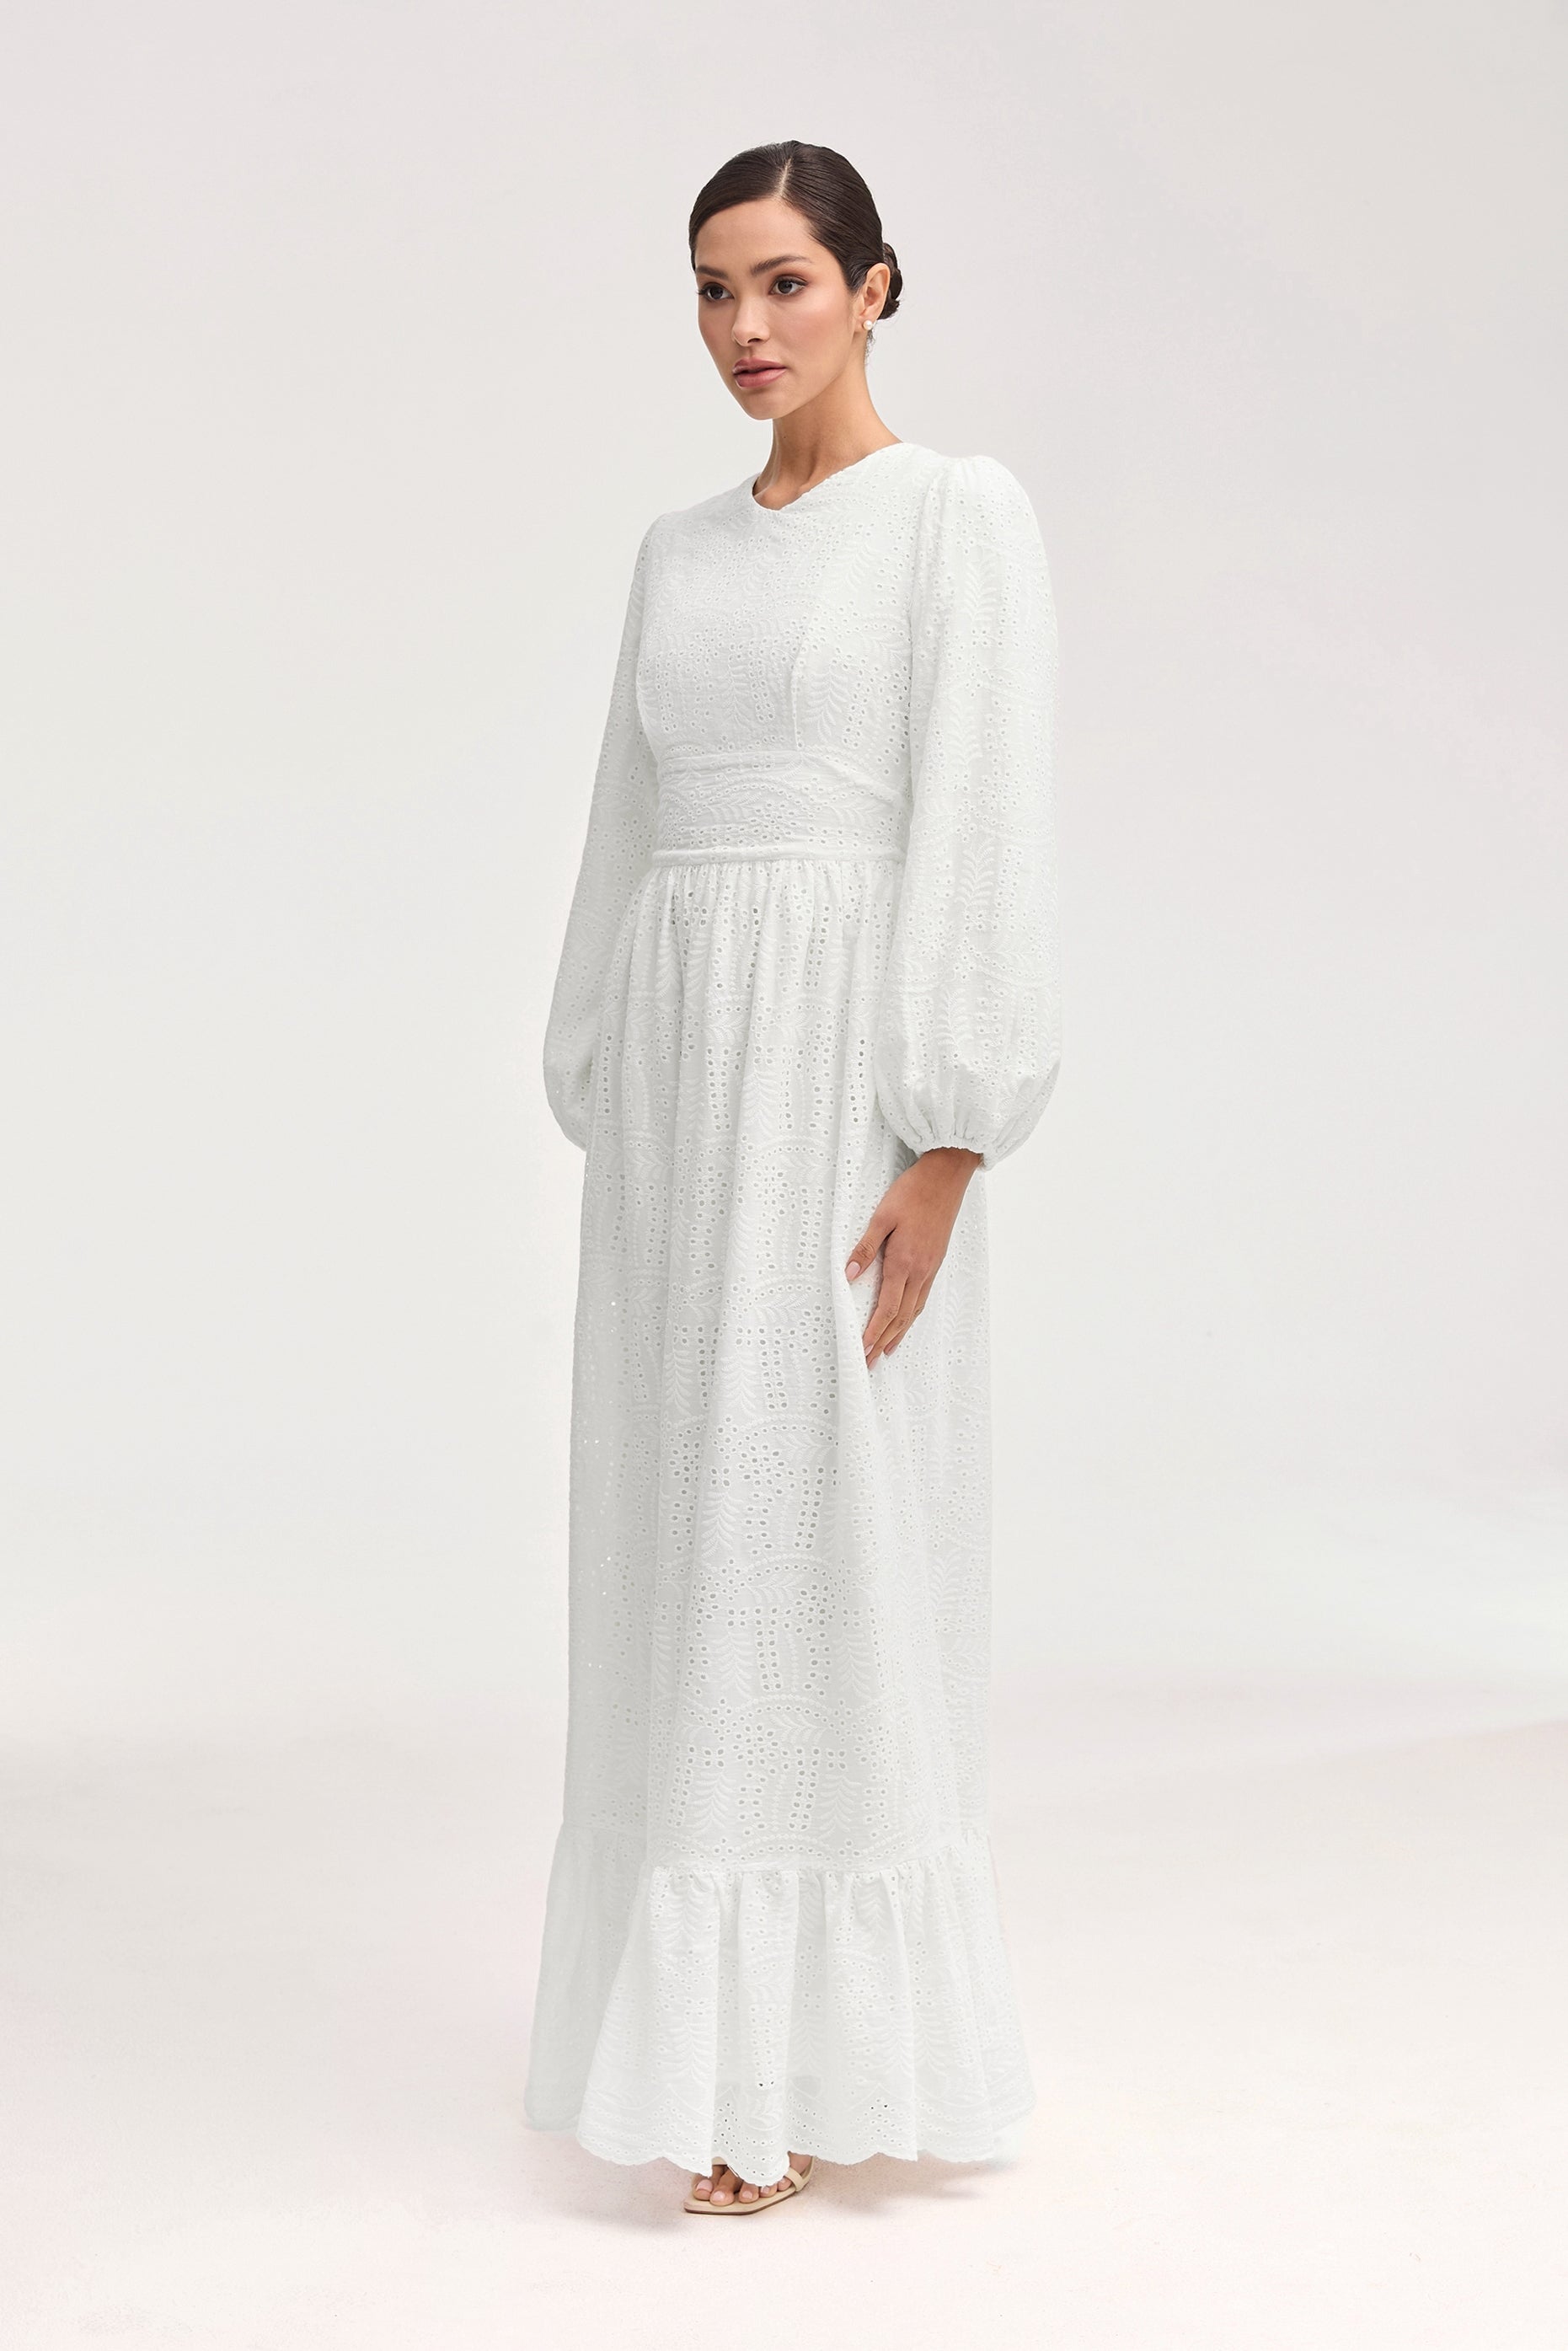 Luciana White Eyelet Maxi Dress Clothing Veiled 